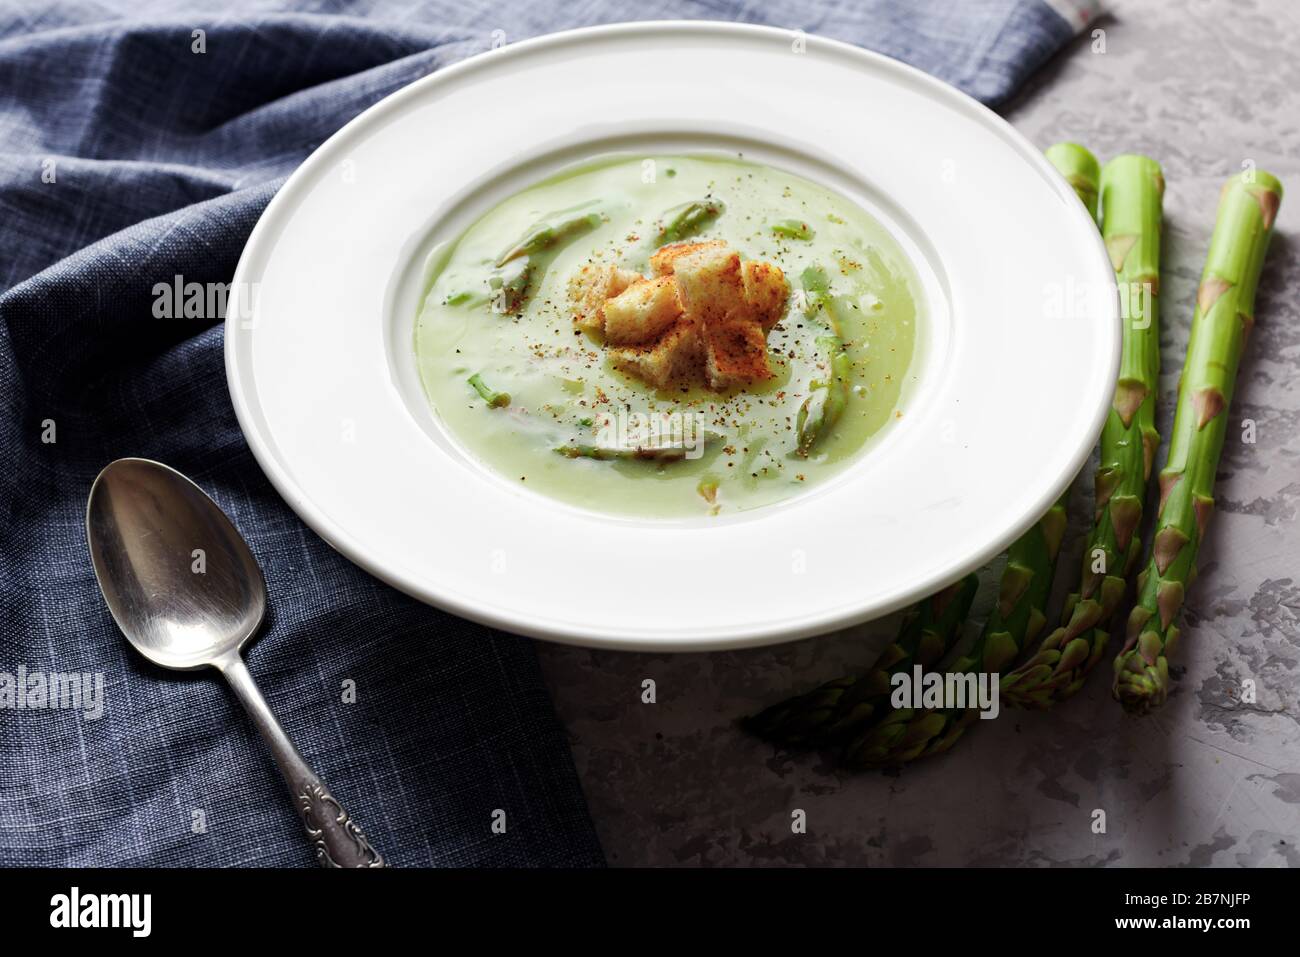 Zuppa di asparagi in bianco ciotola closeup. Fotografia di cibo Foto Stock